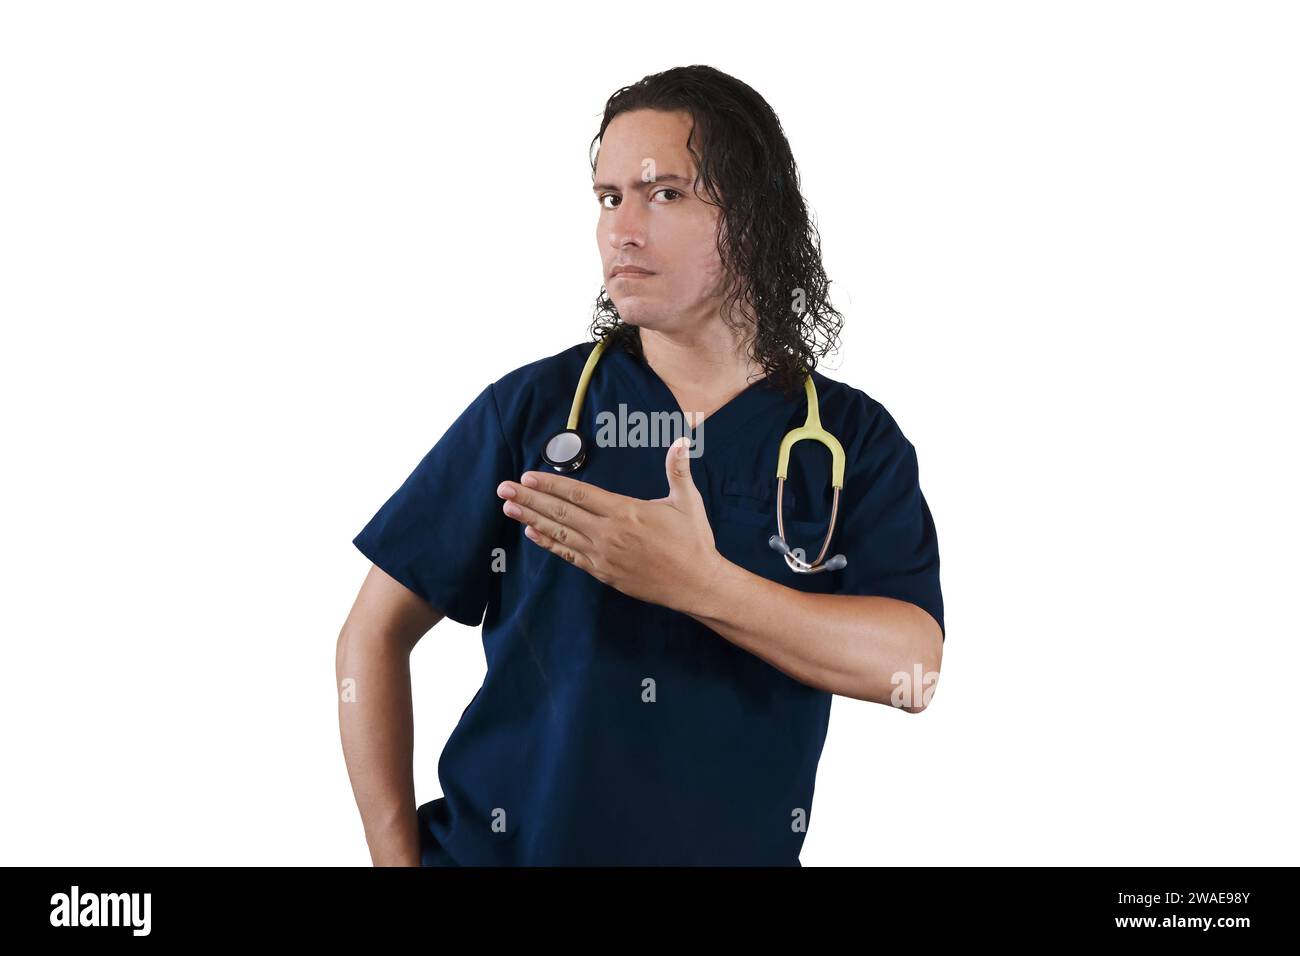 Un médecin masculin avec une expression sérieuse pointant vers le côté sur un fond blanc Banque D'Images